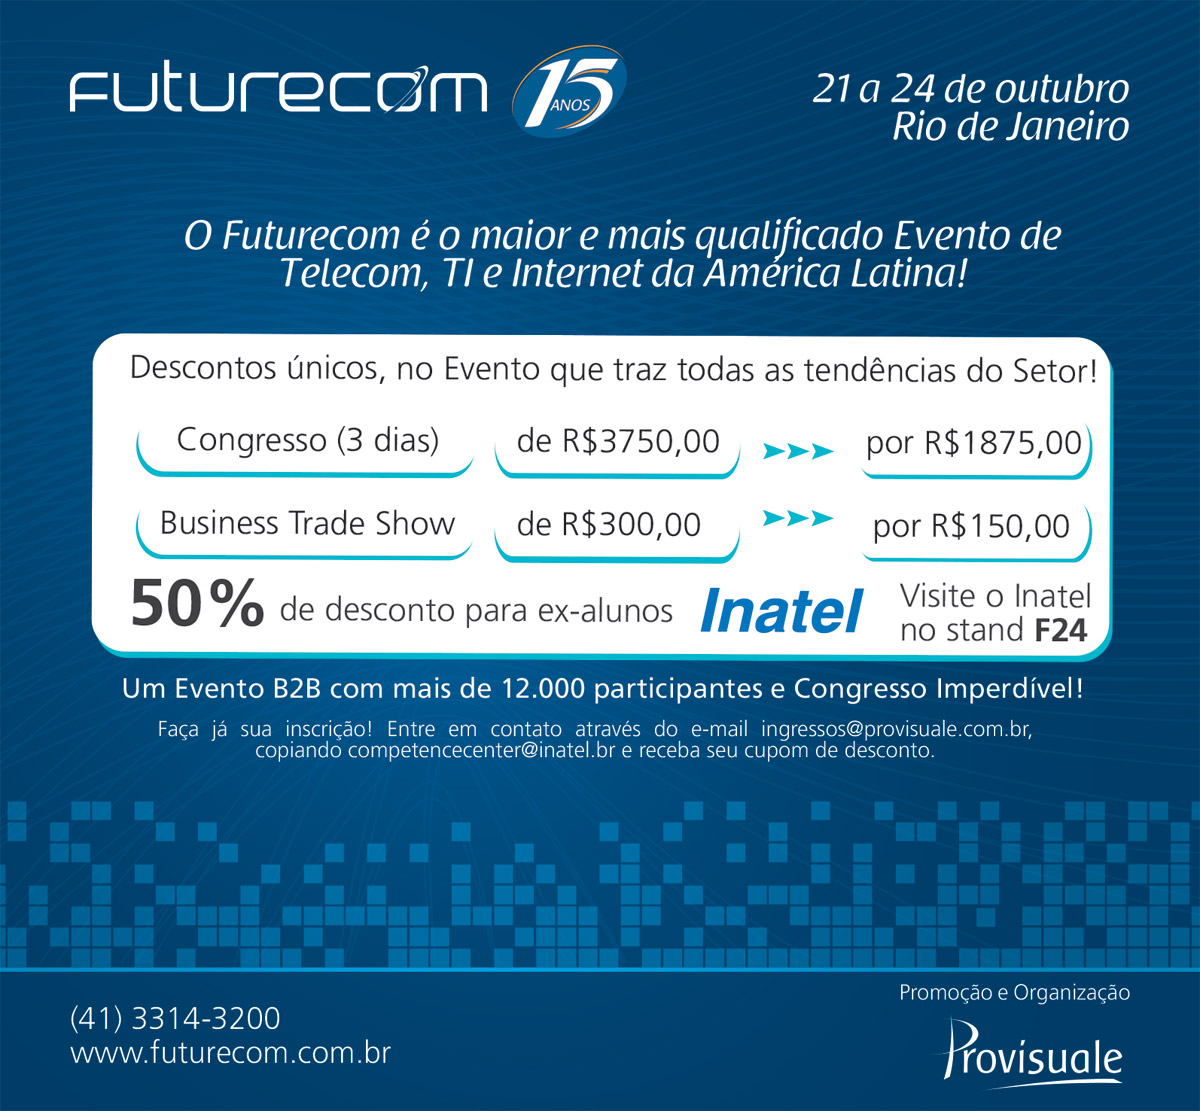 inatel-futurecom-desconto-ex-alunos-jul-2013-1